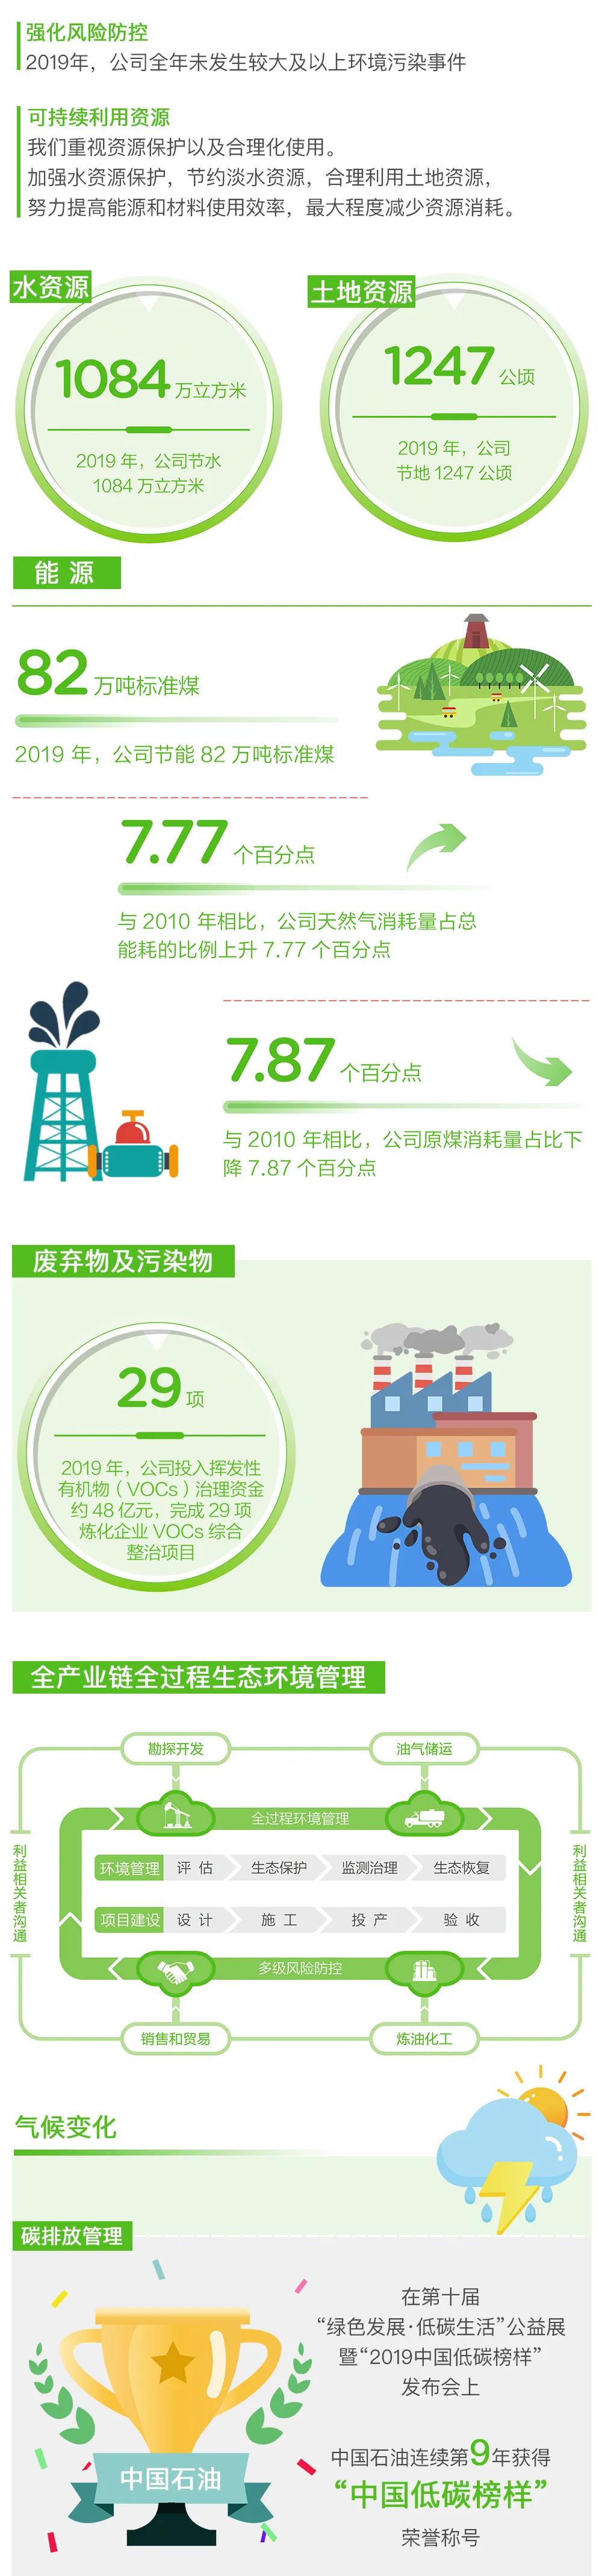 重磅 | 中国石油发布2019年度社会责任报告